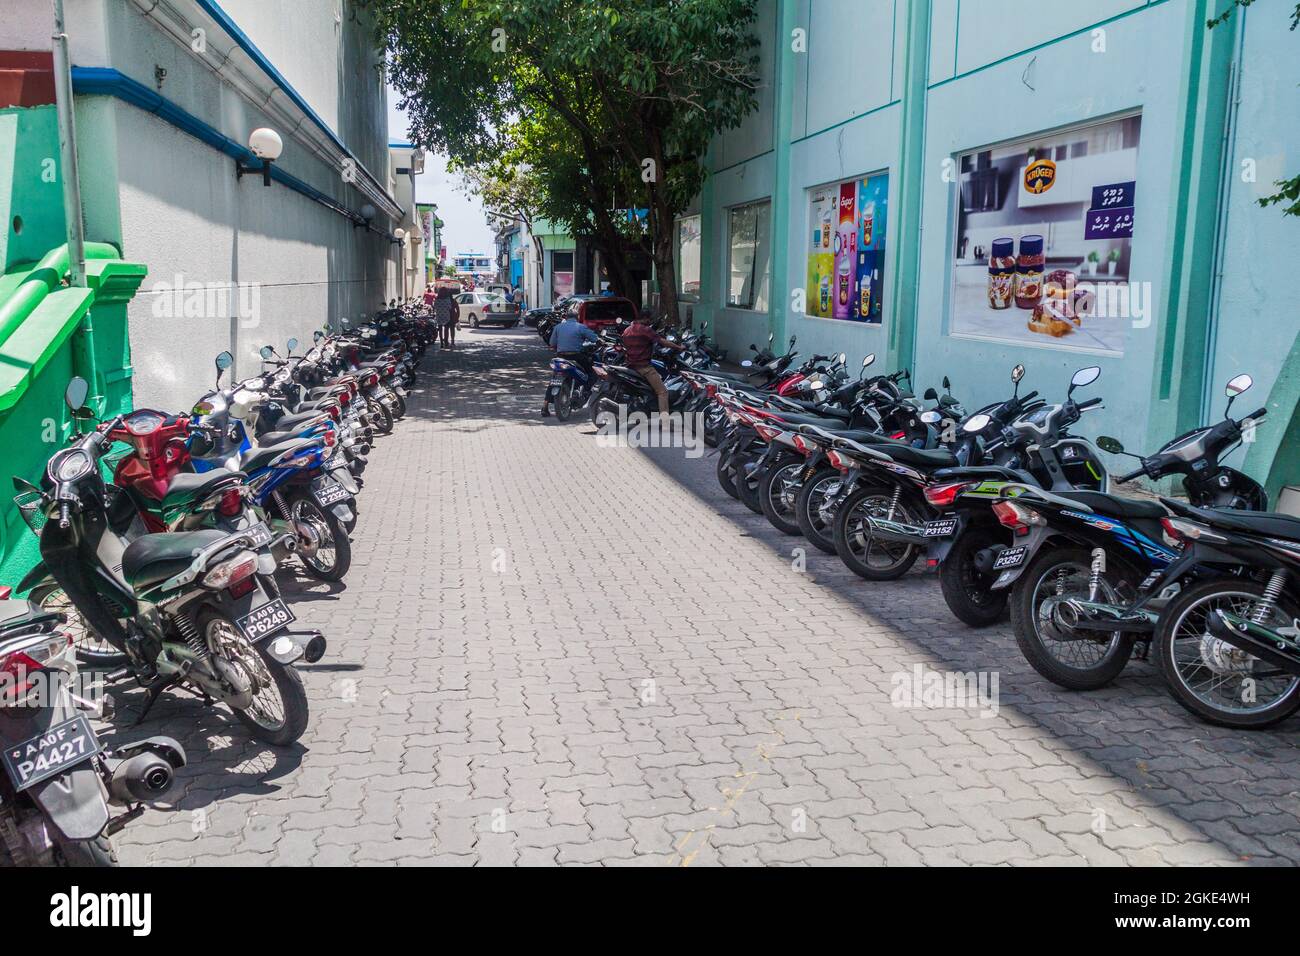 MÄNNLICH, MALEDIVEN - 11. JULI 2016: Reihen von Motorrädern in einer Gasse in Male, Malediven Stockfoto